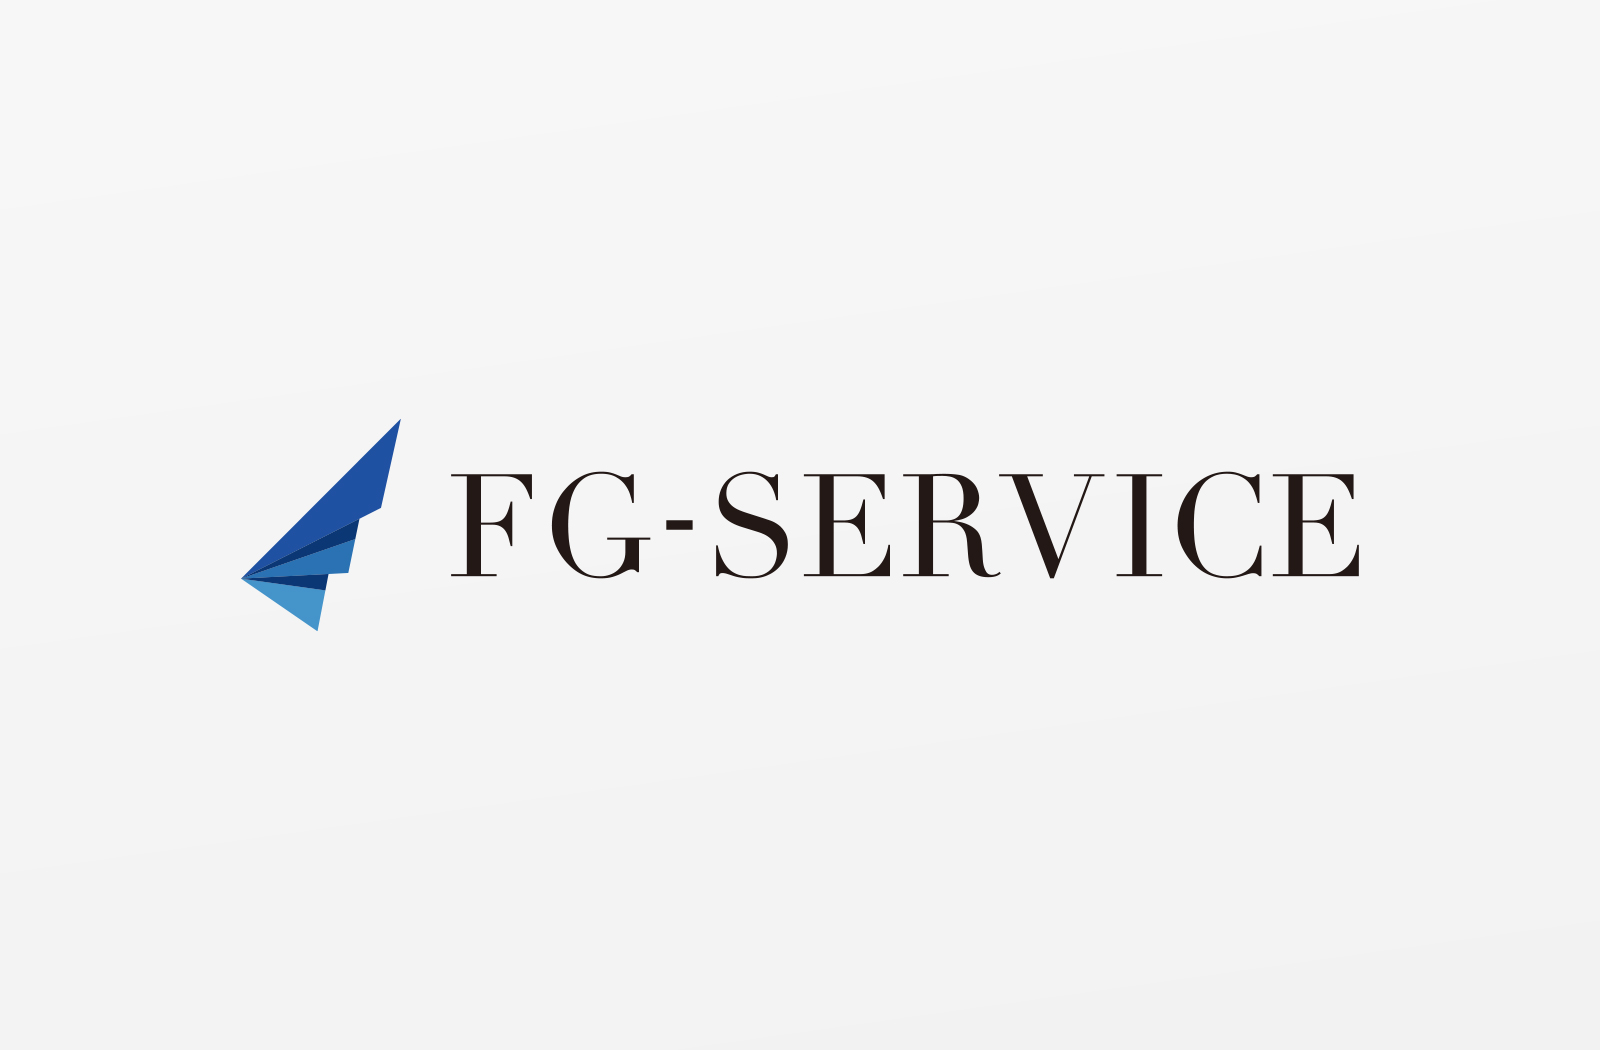 税理士紹介サービスの「FG-SERVICE株式会社」様のロゴデザイン